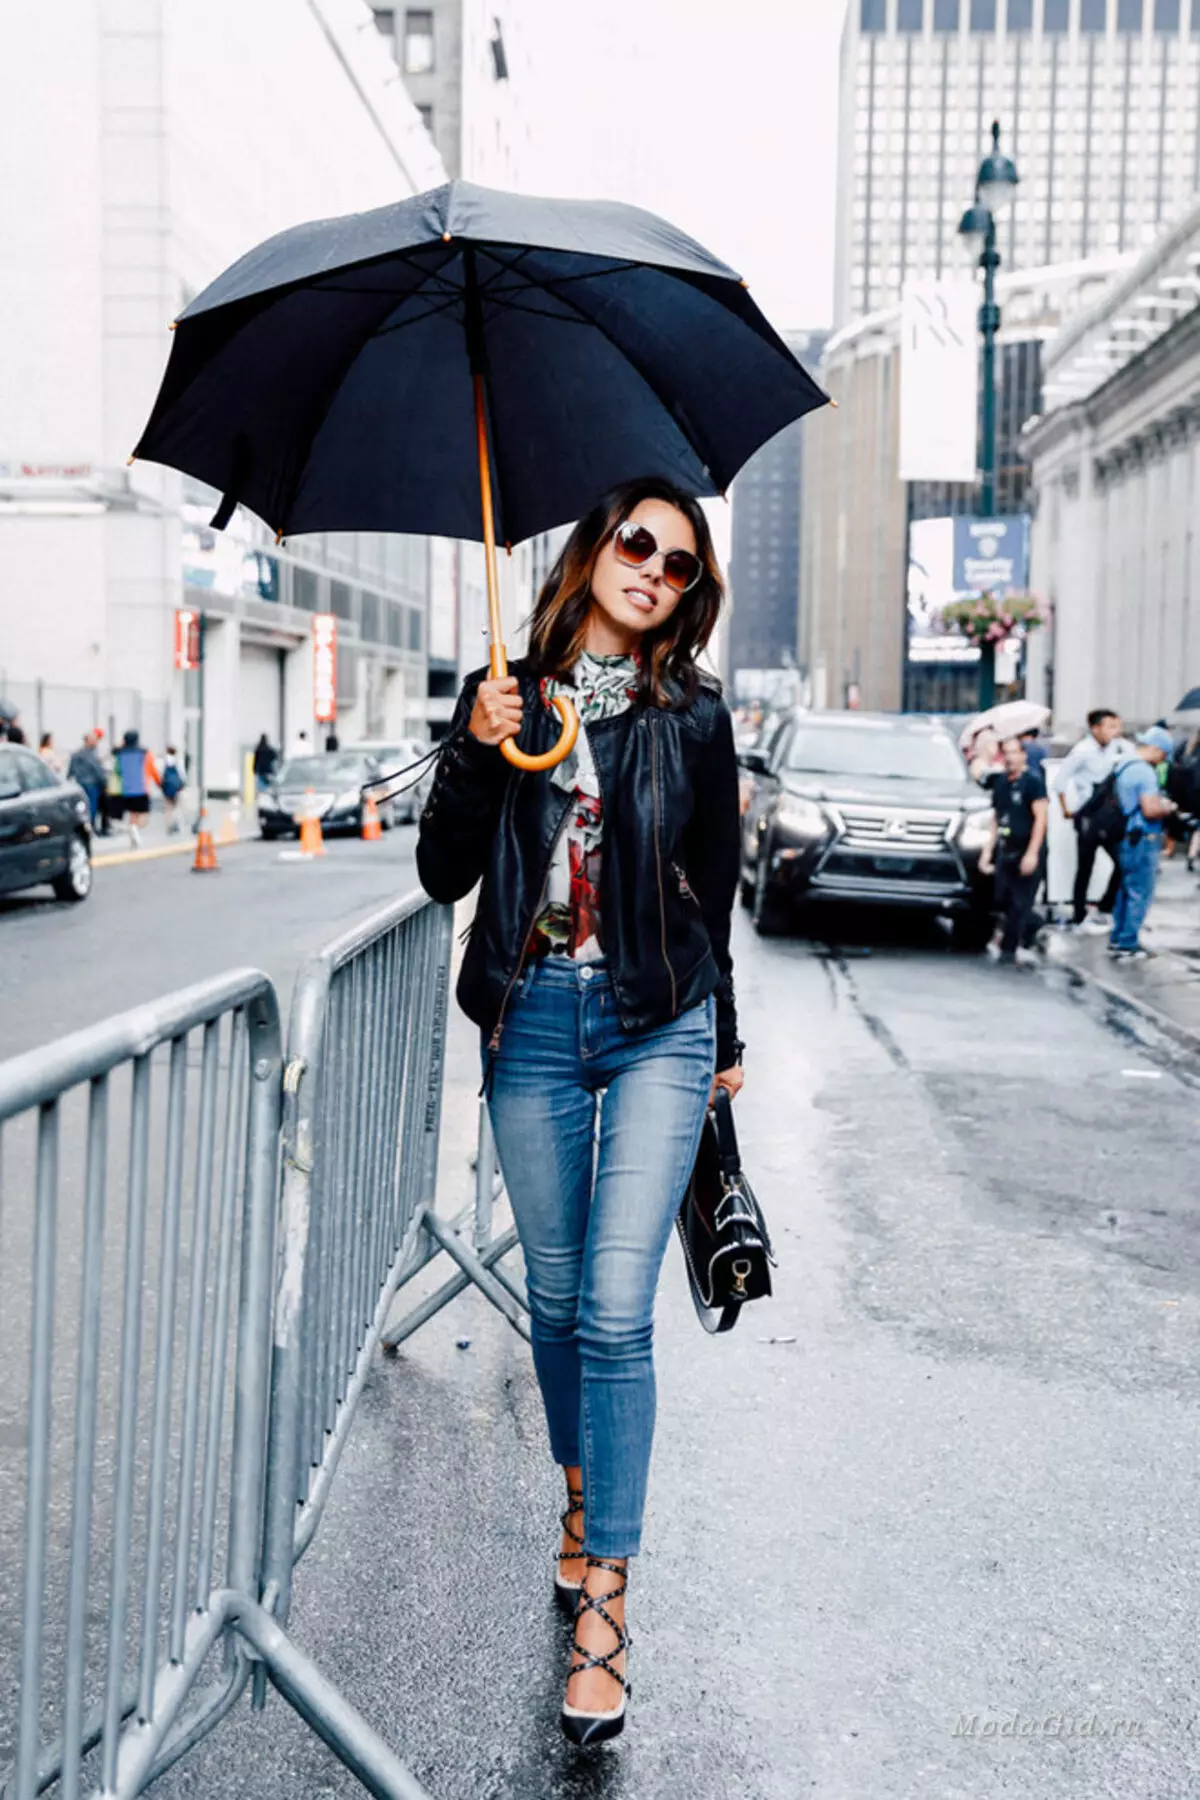 8 градусов что одеть. Образы с зонтом. Стильный образ с зонтом. Образ в дождливую погоду. Стильно одеться в дождь.